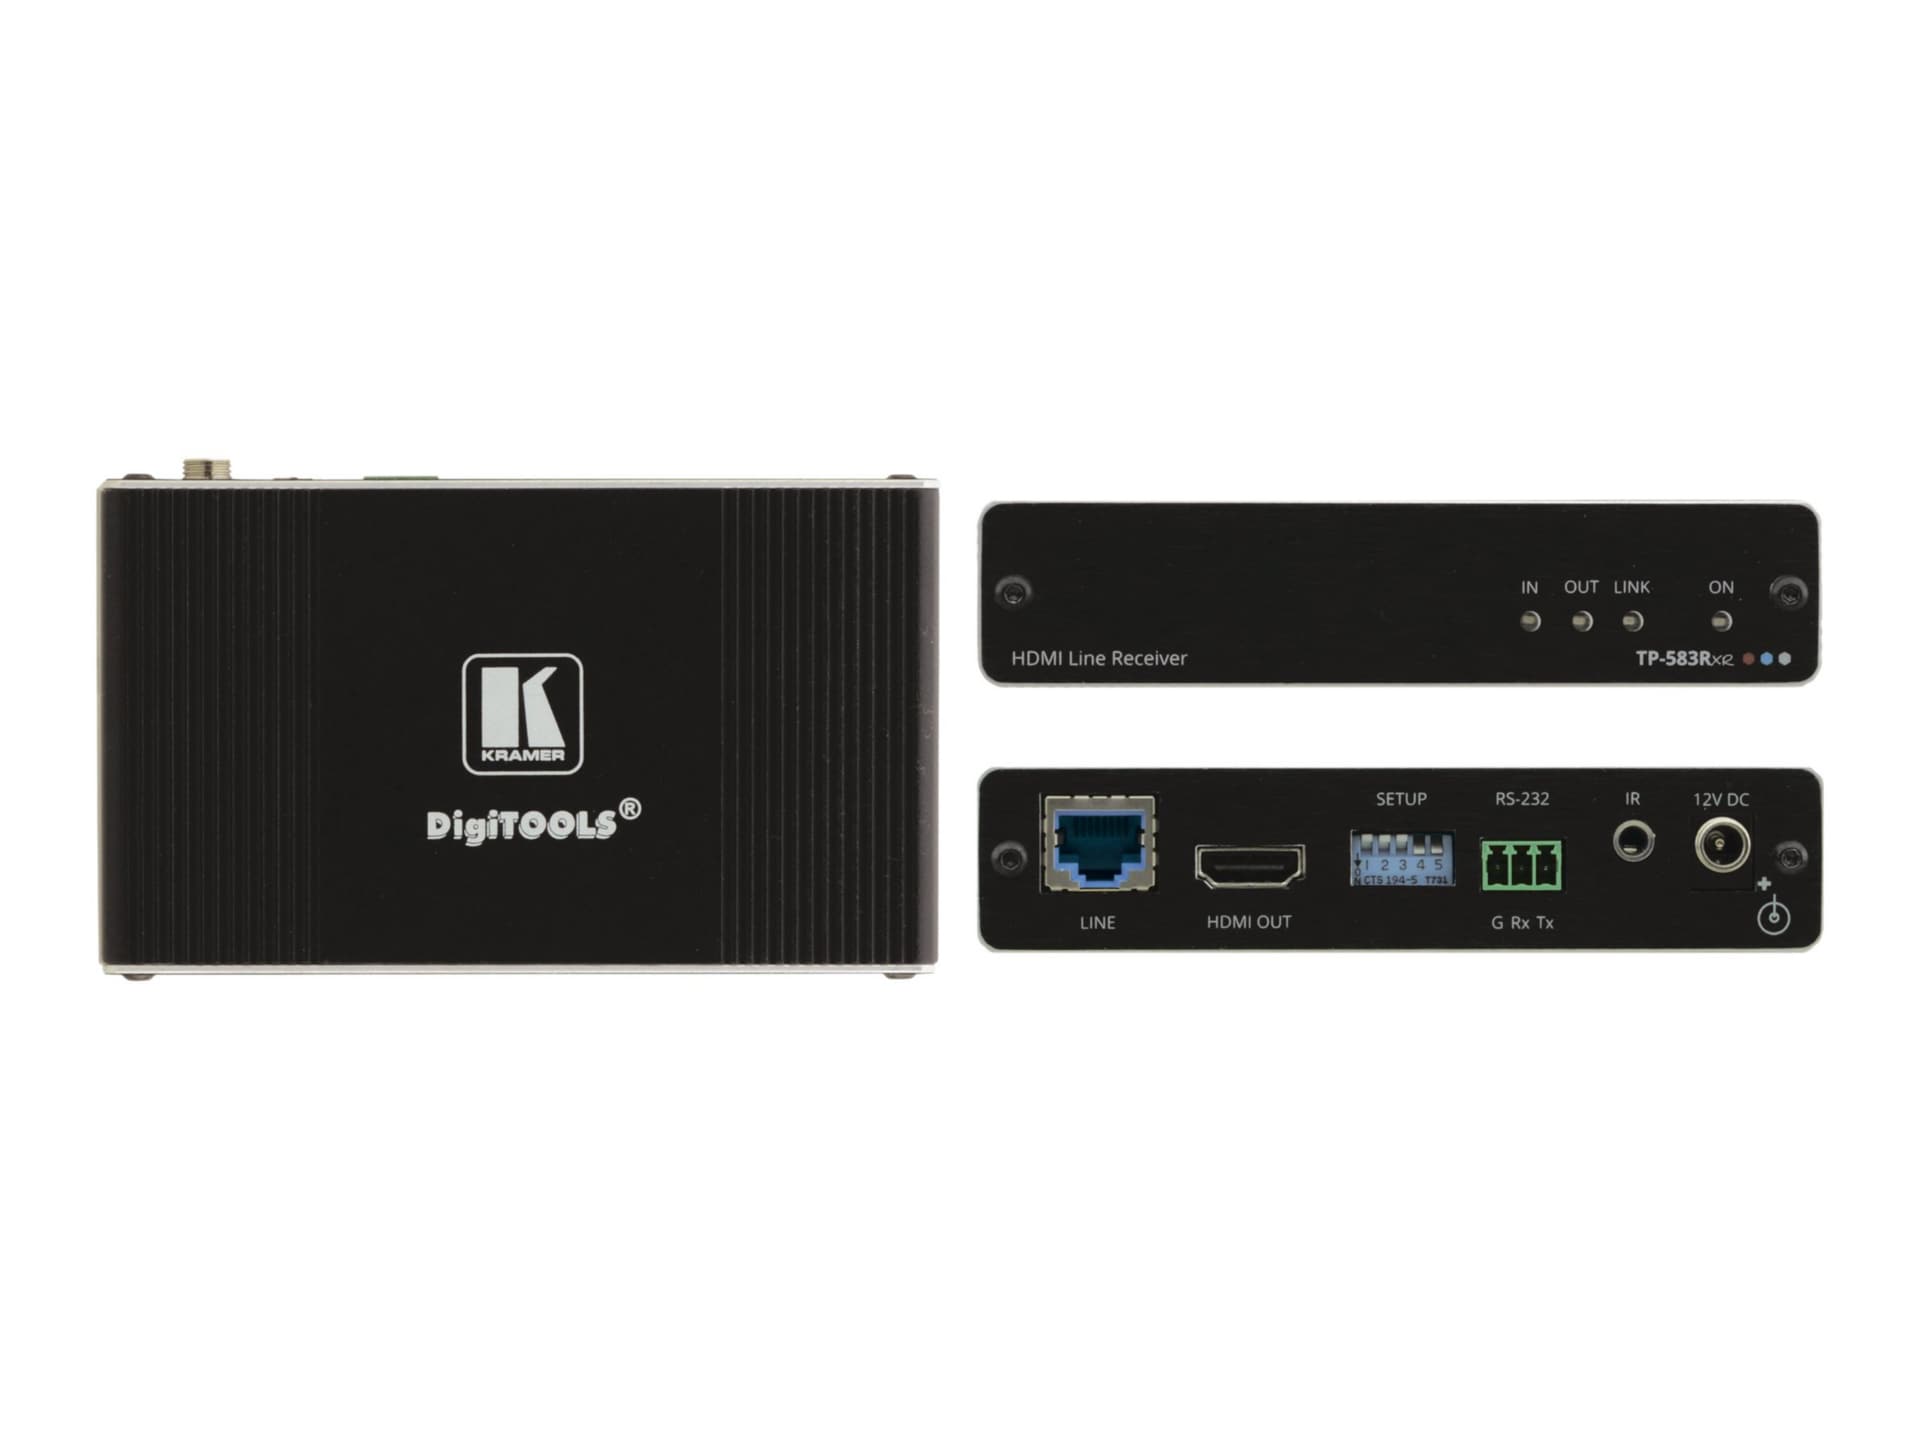 Kramer DigiTOOLS TP-583Rxr - video/audio/infrared/serial extender - HDMI, H